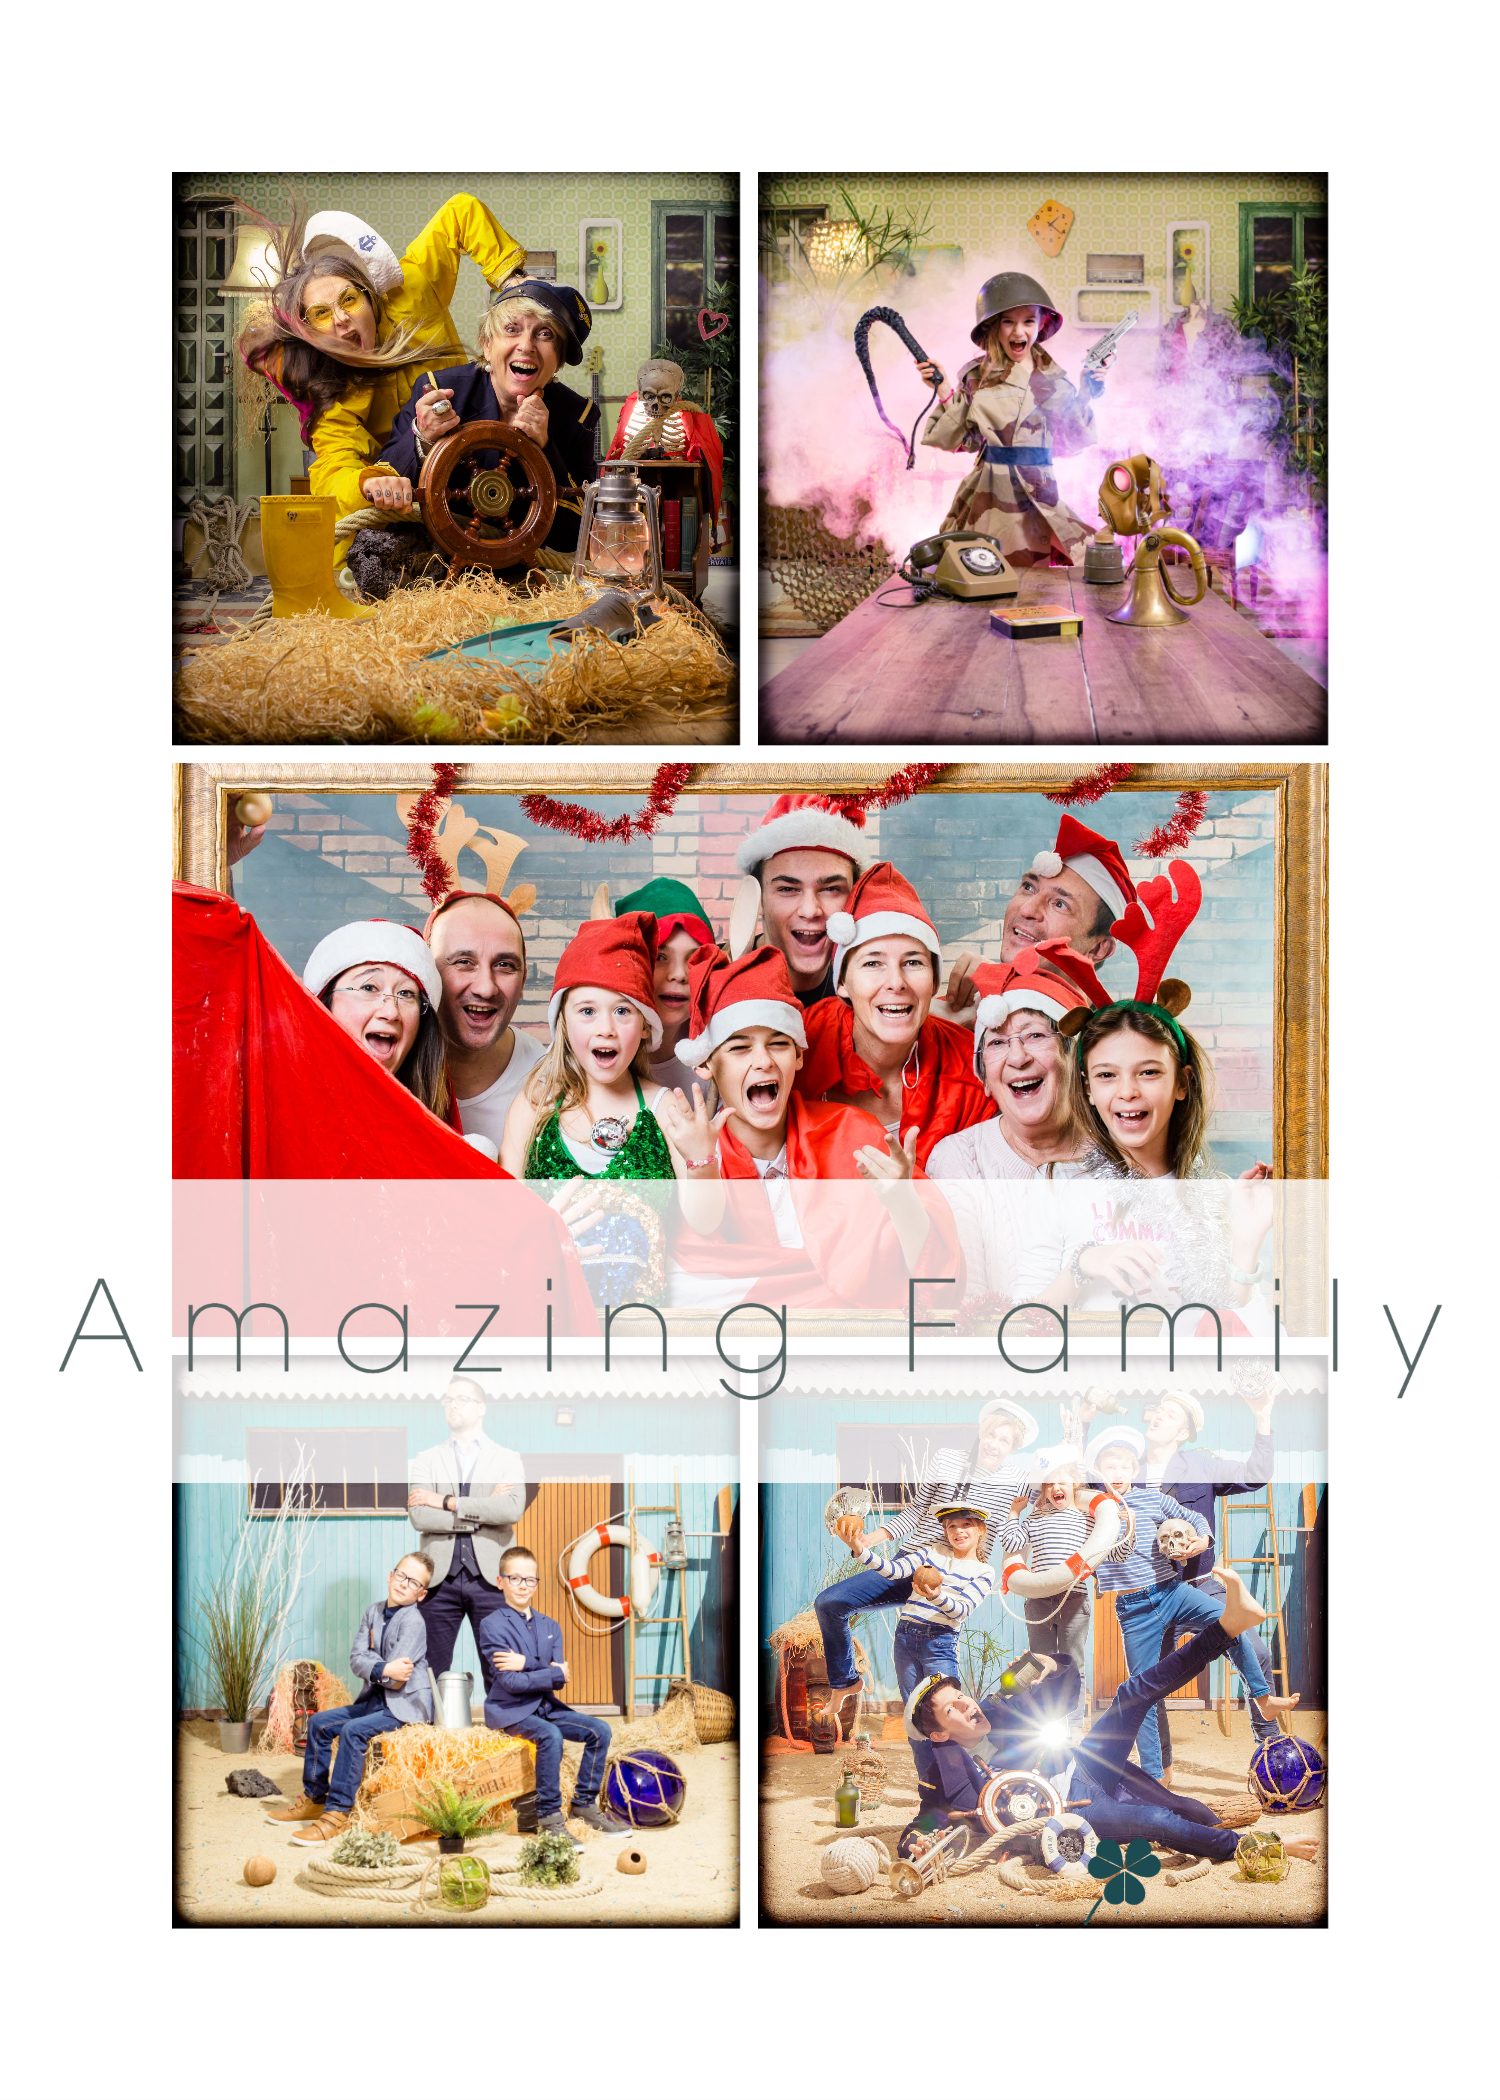 photographe famille, portrait de famille original, photo de groupe, shooting photo a domicile, seance shooting photo en famille